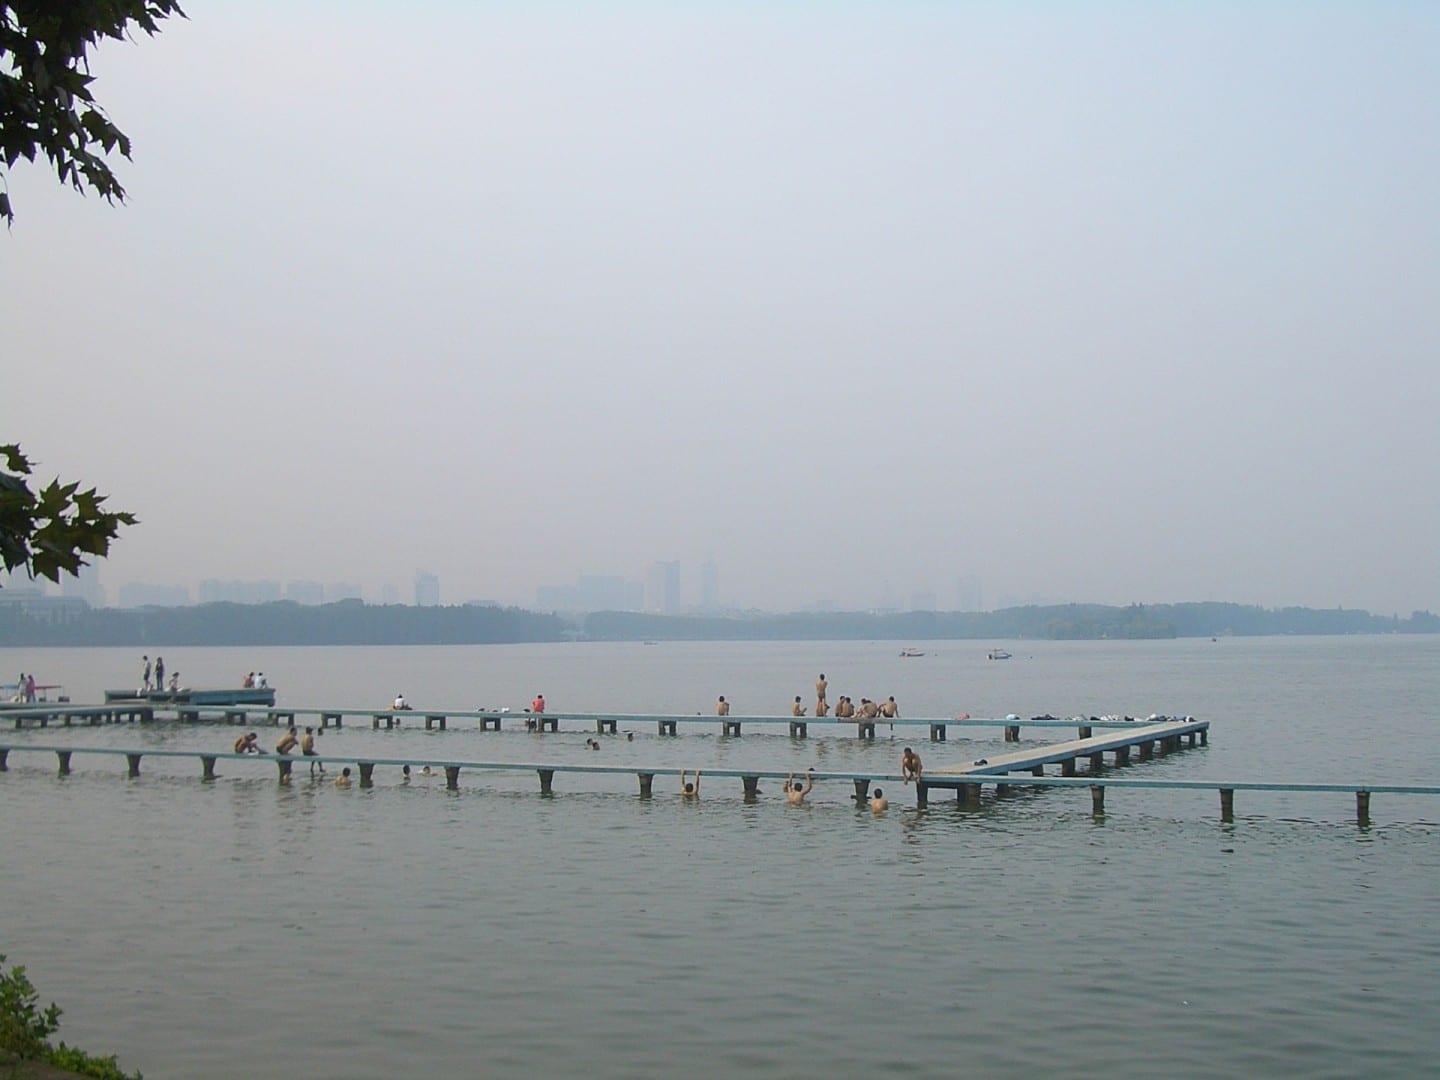 Una popular zona de natación en el Parque Liyuan en el Lago Este, como se vio en 2008 Wuhan China